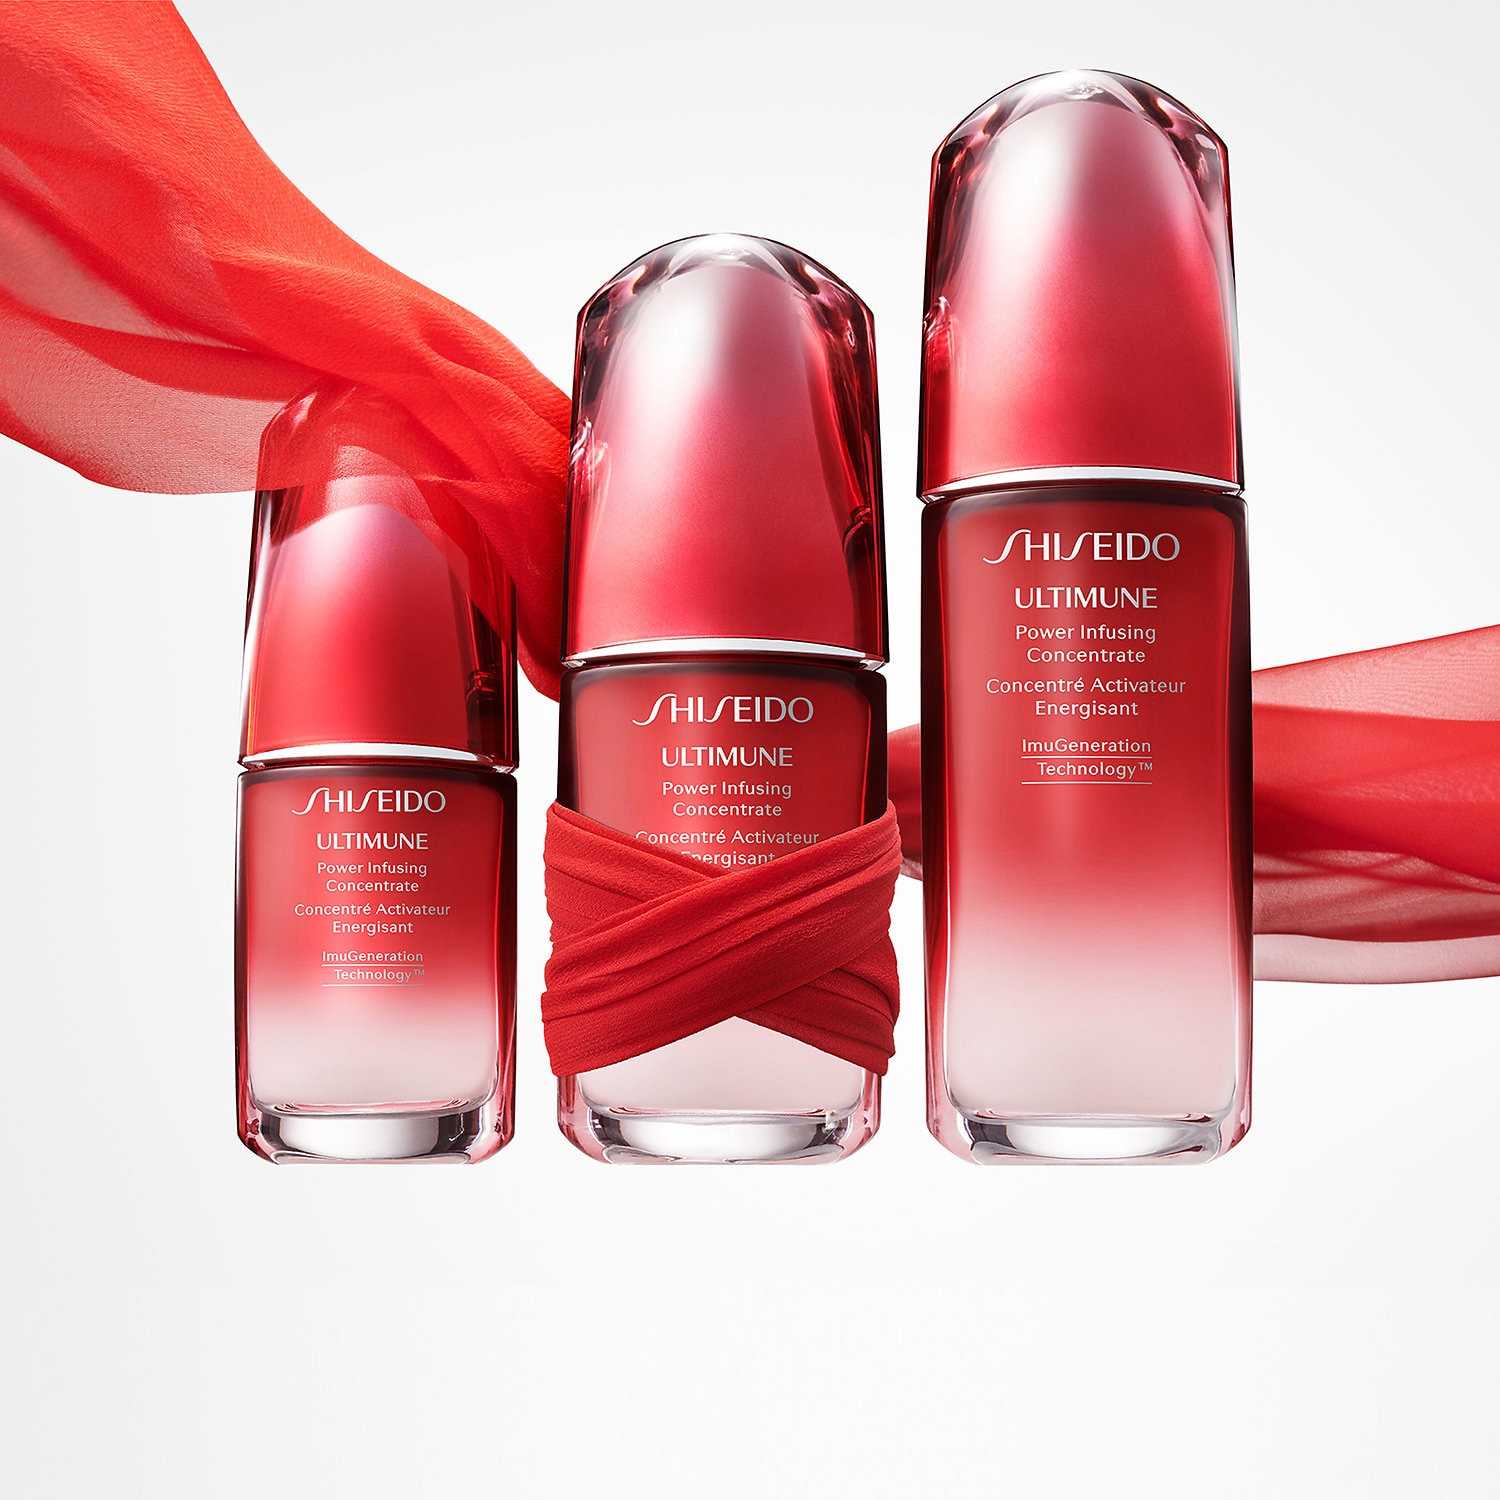 Shiseido Minimalist - короткий но максимально информативный обзор Для большего удобства добавлены характеристики отзывы и видео